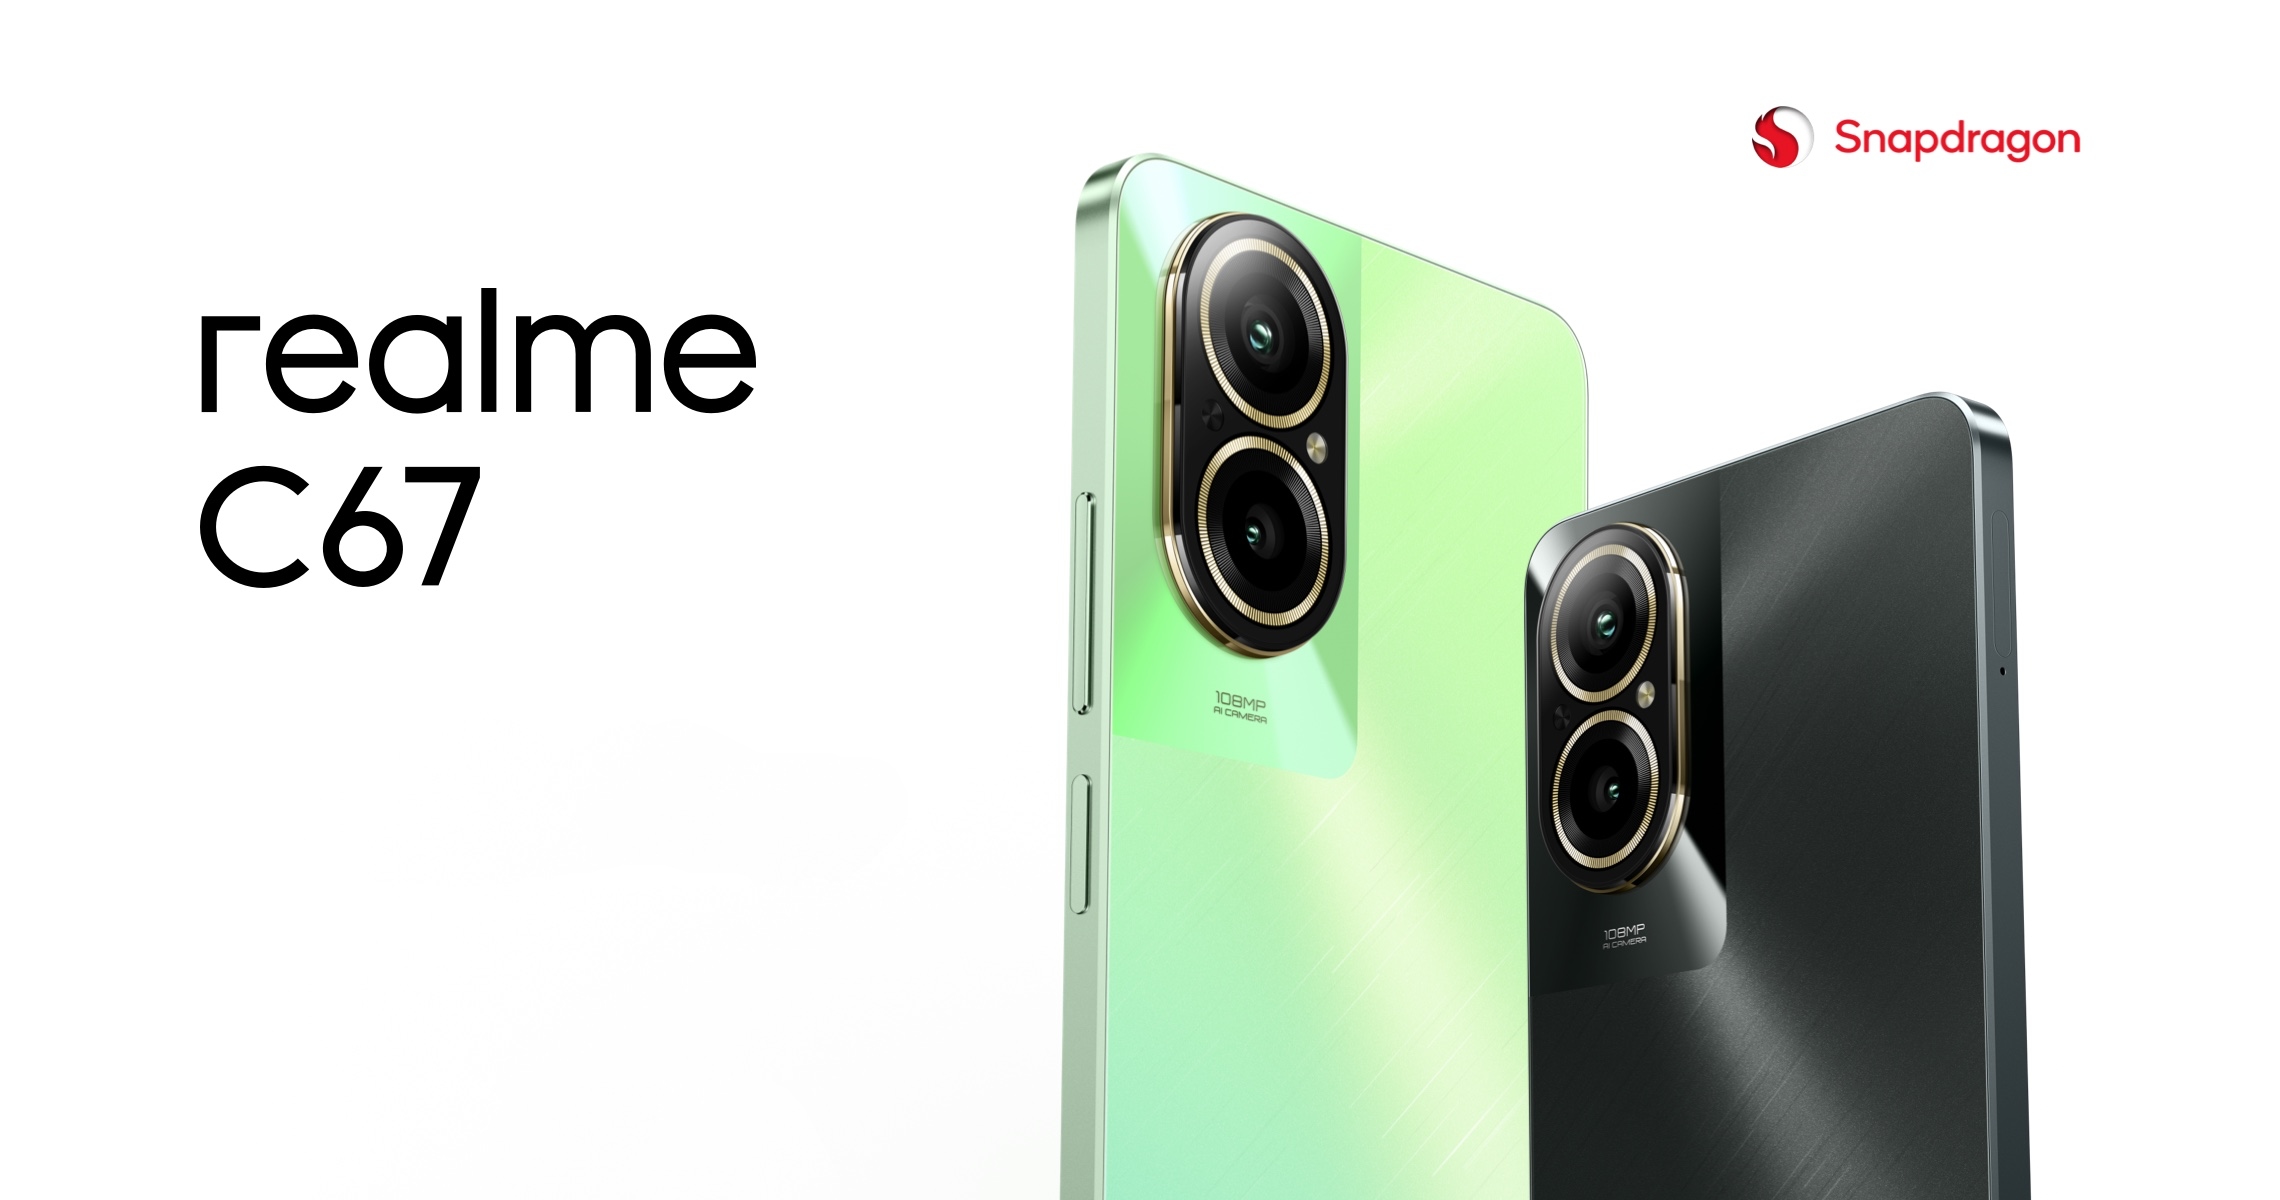 realme C67 4G: бюджетний смартфон із чипом Snapdragon 685 і камерою на 108 МП